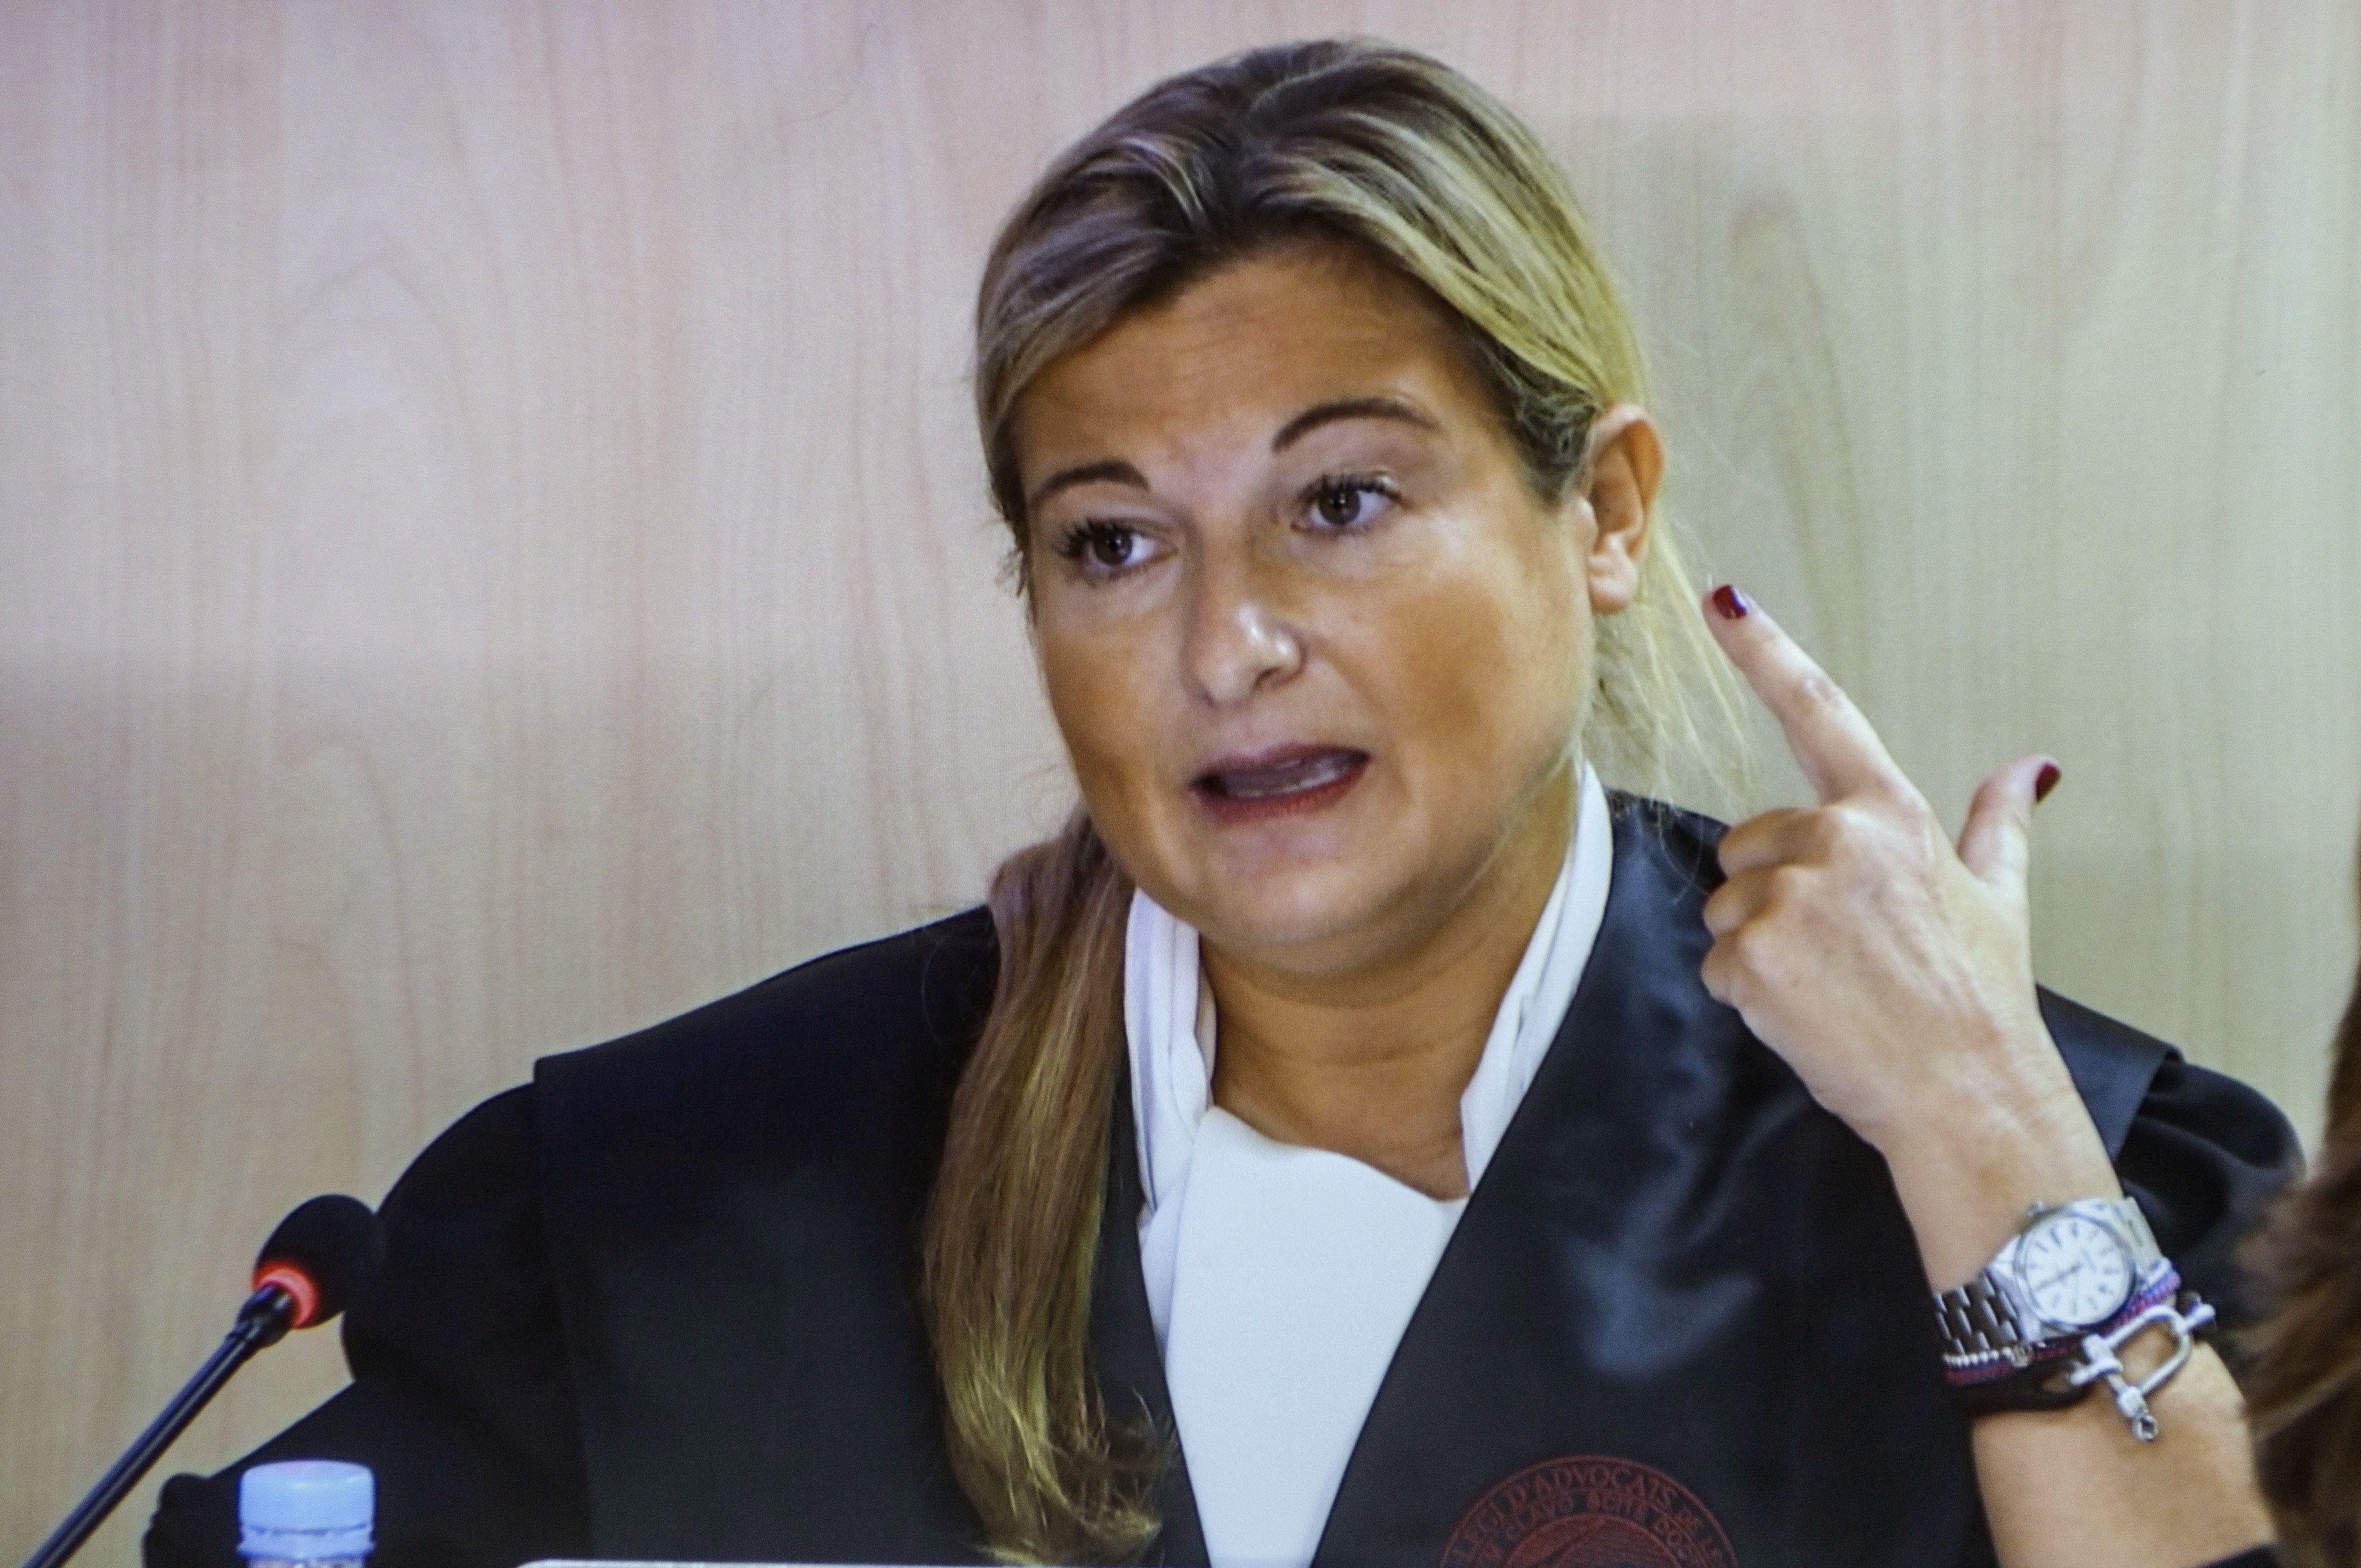 La abogada de Manos Limpias, Virginia López Negrete, durante una intervención en el juicio del caso Nóos